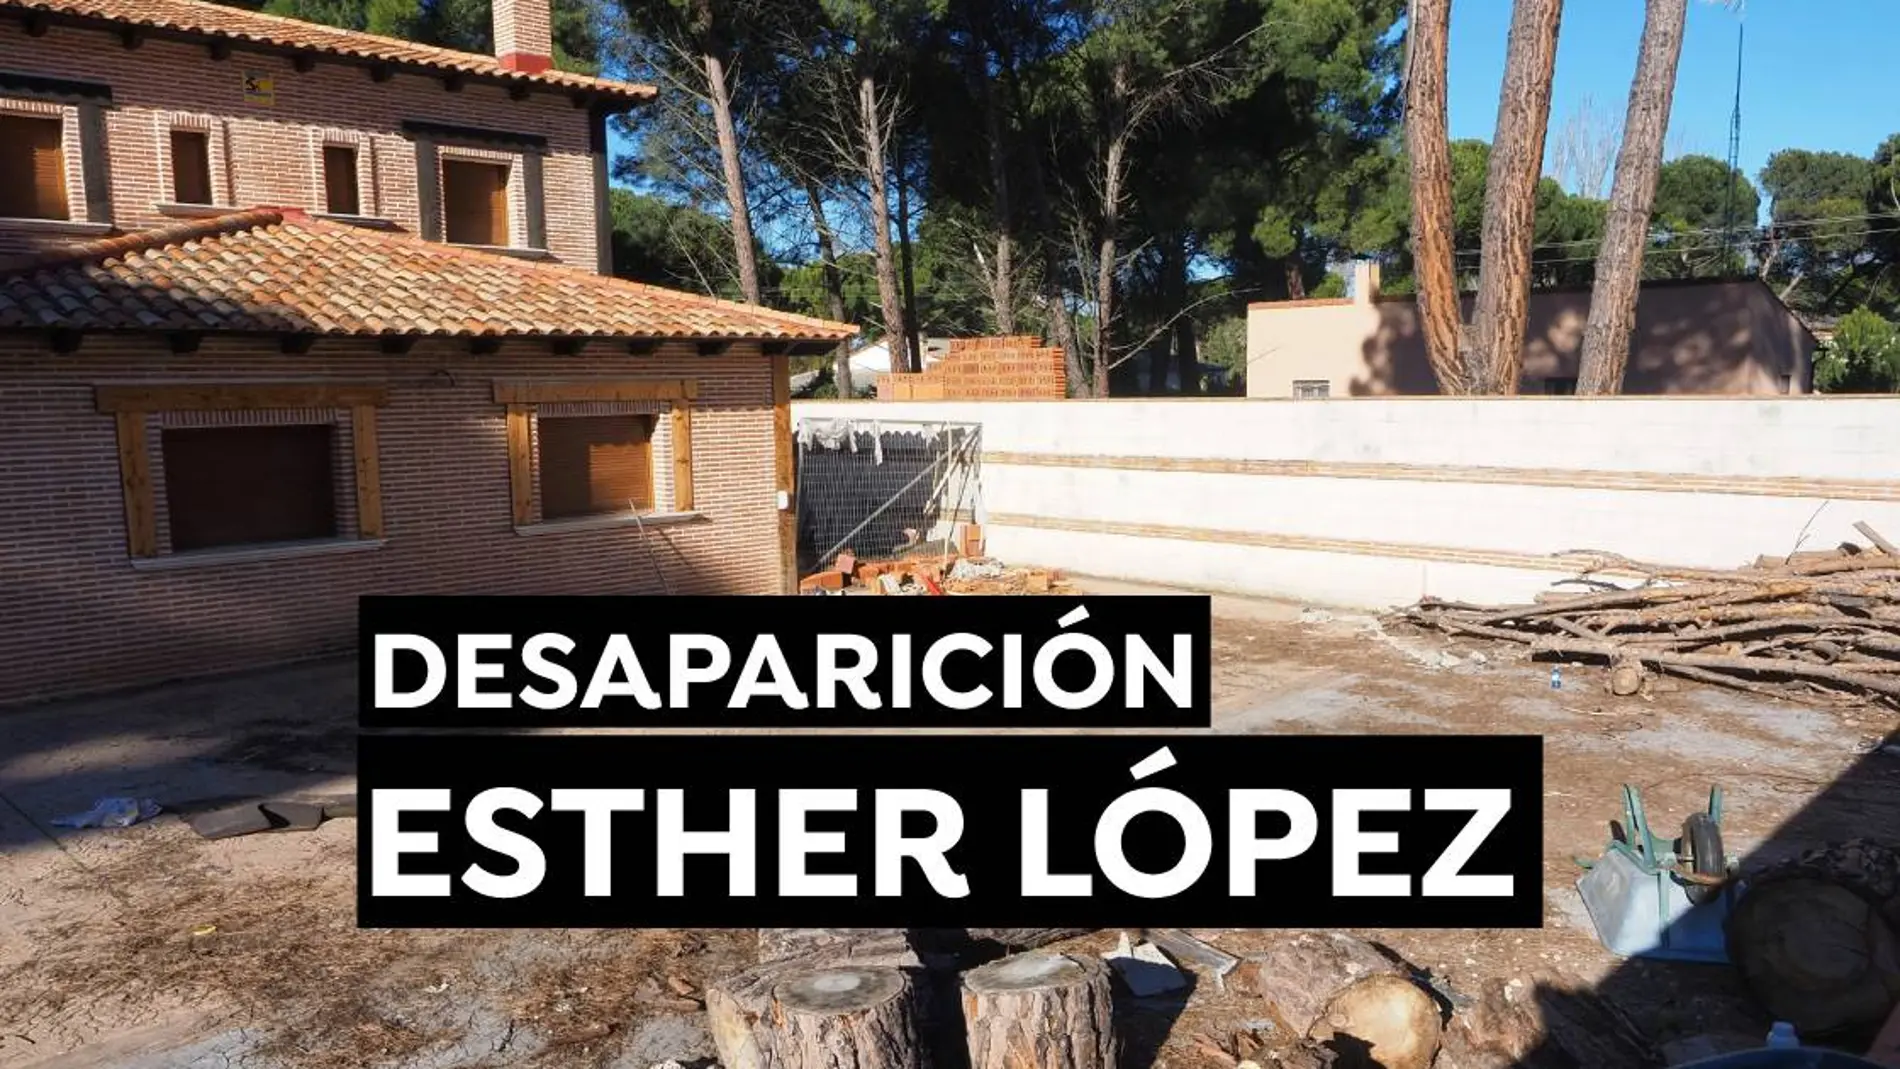 Esther López desaparecida: Última hora de la búsqueda en Traspinedo, Valladolid